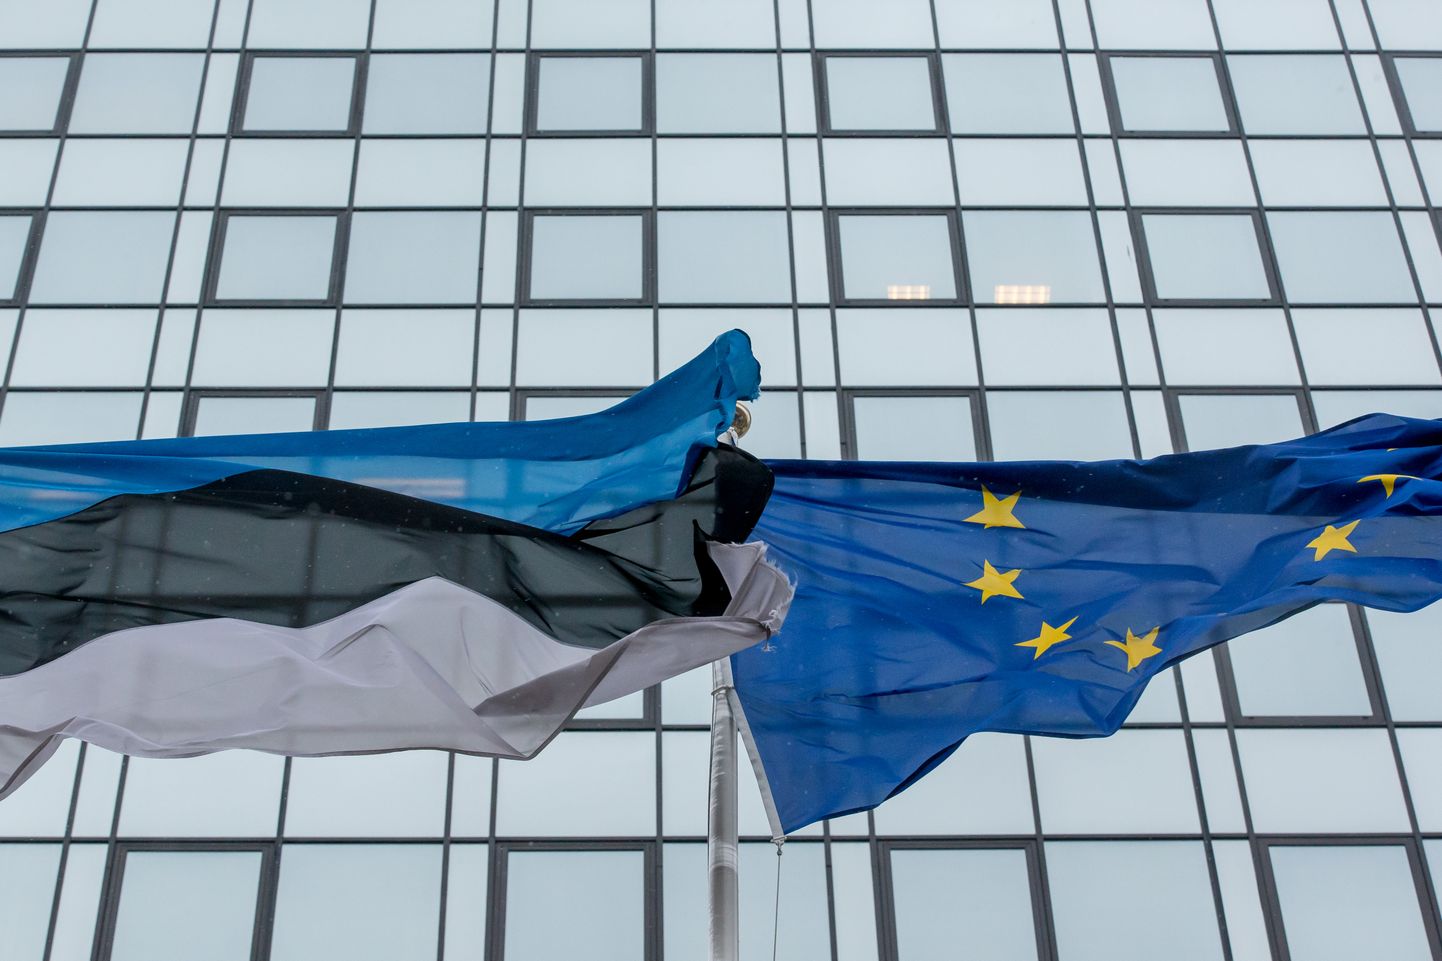 Еврокомиссия пришла к выводу, что предлагаемые Эстонией меры необходимы, уместны и пропорциональны для устранения серьезных перекосов в экономике.